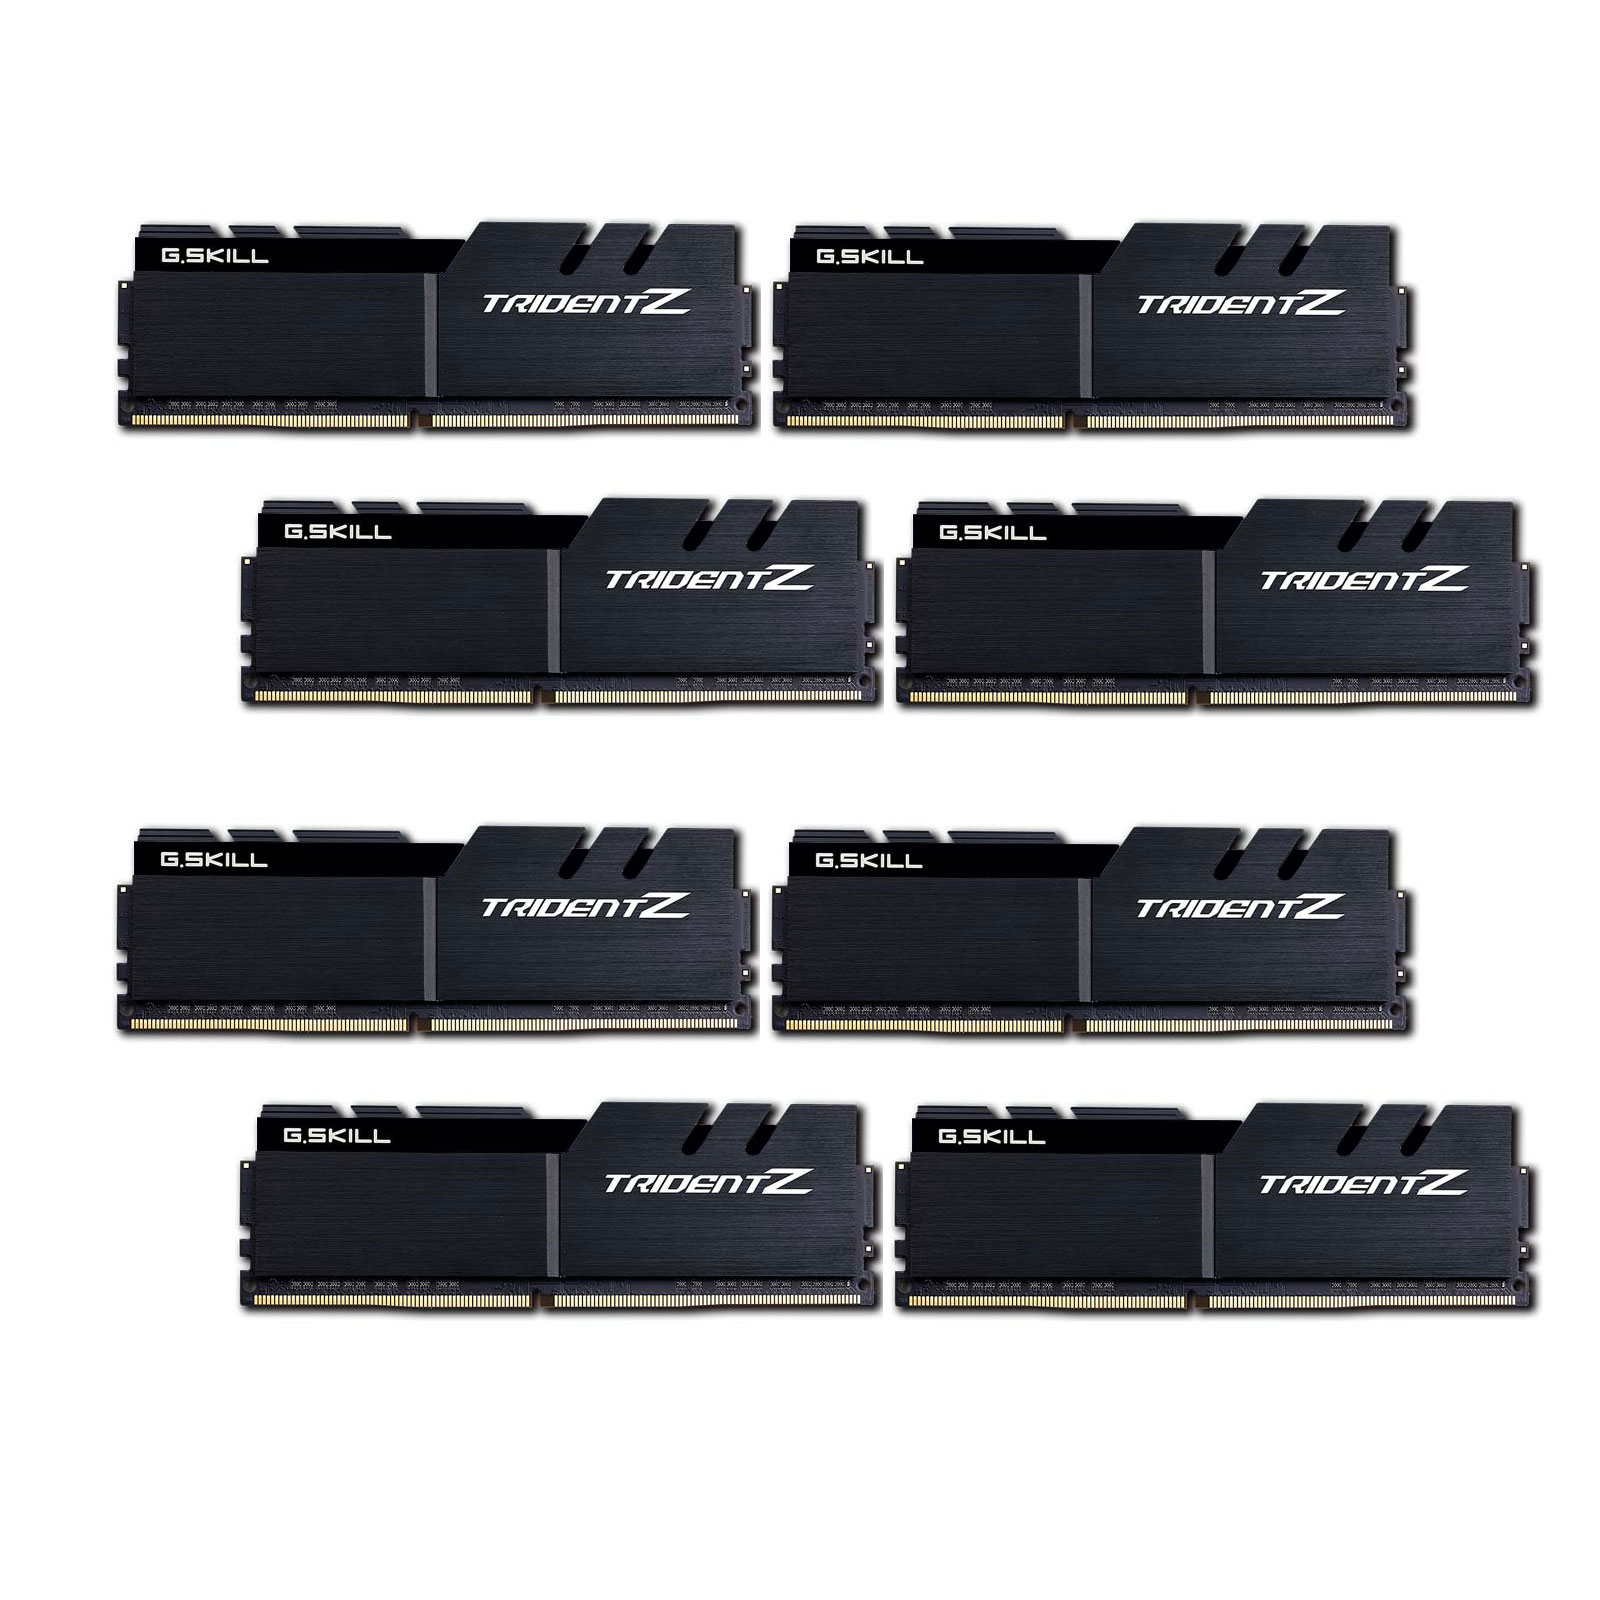 64GB G.Skill DDR4 Trident Z 3600Mhz PC4-28800 CL16 Black 1.35V